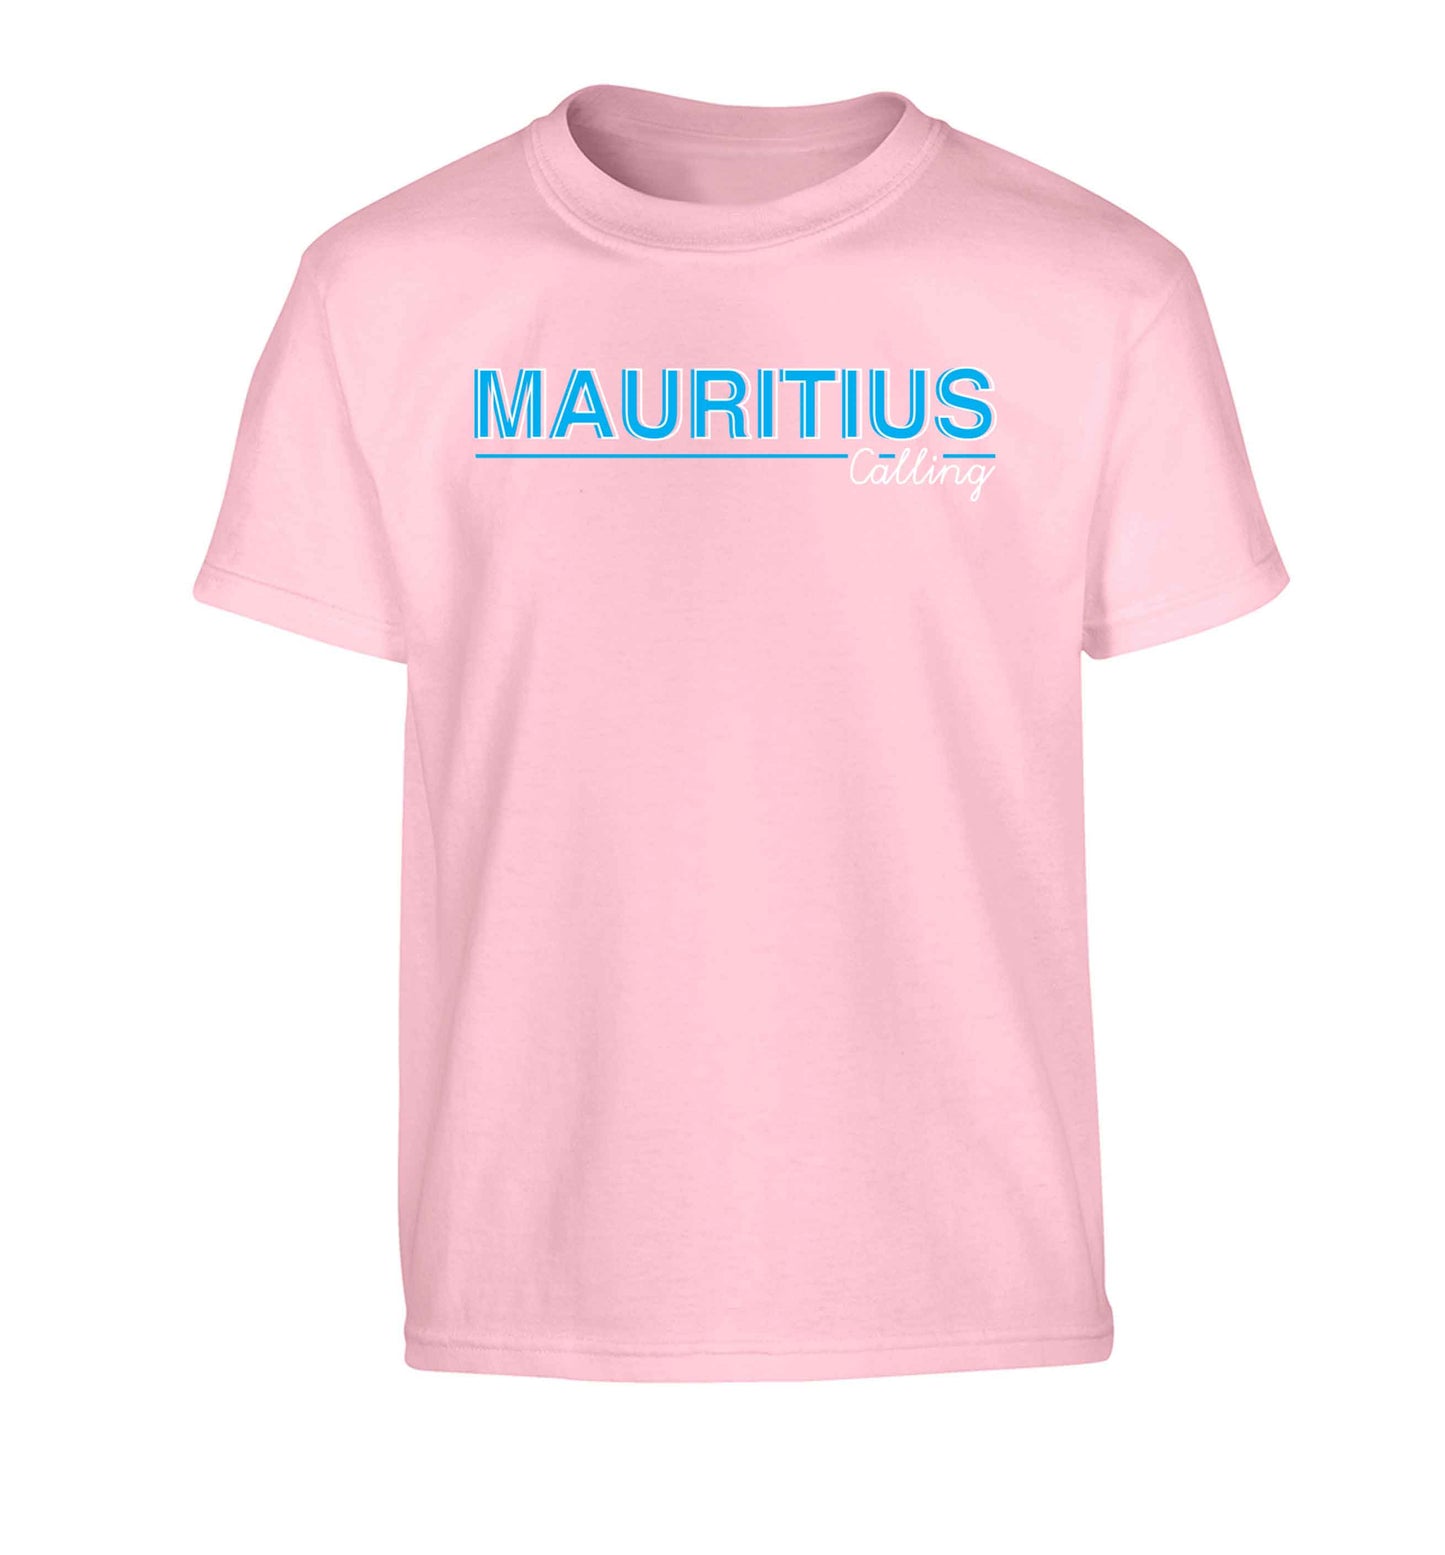 Mauritius calling Children's light pink Tshirt 12-13 Years